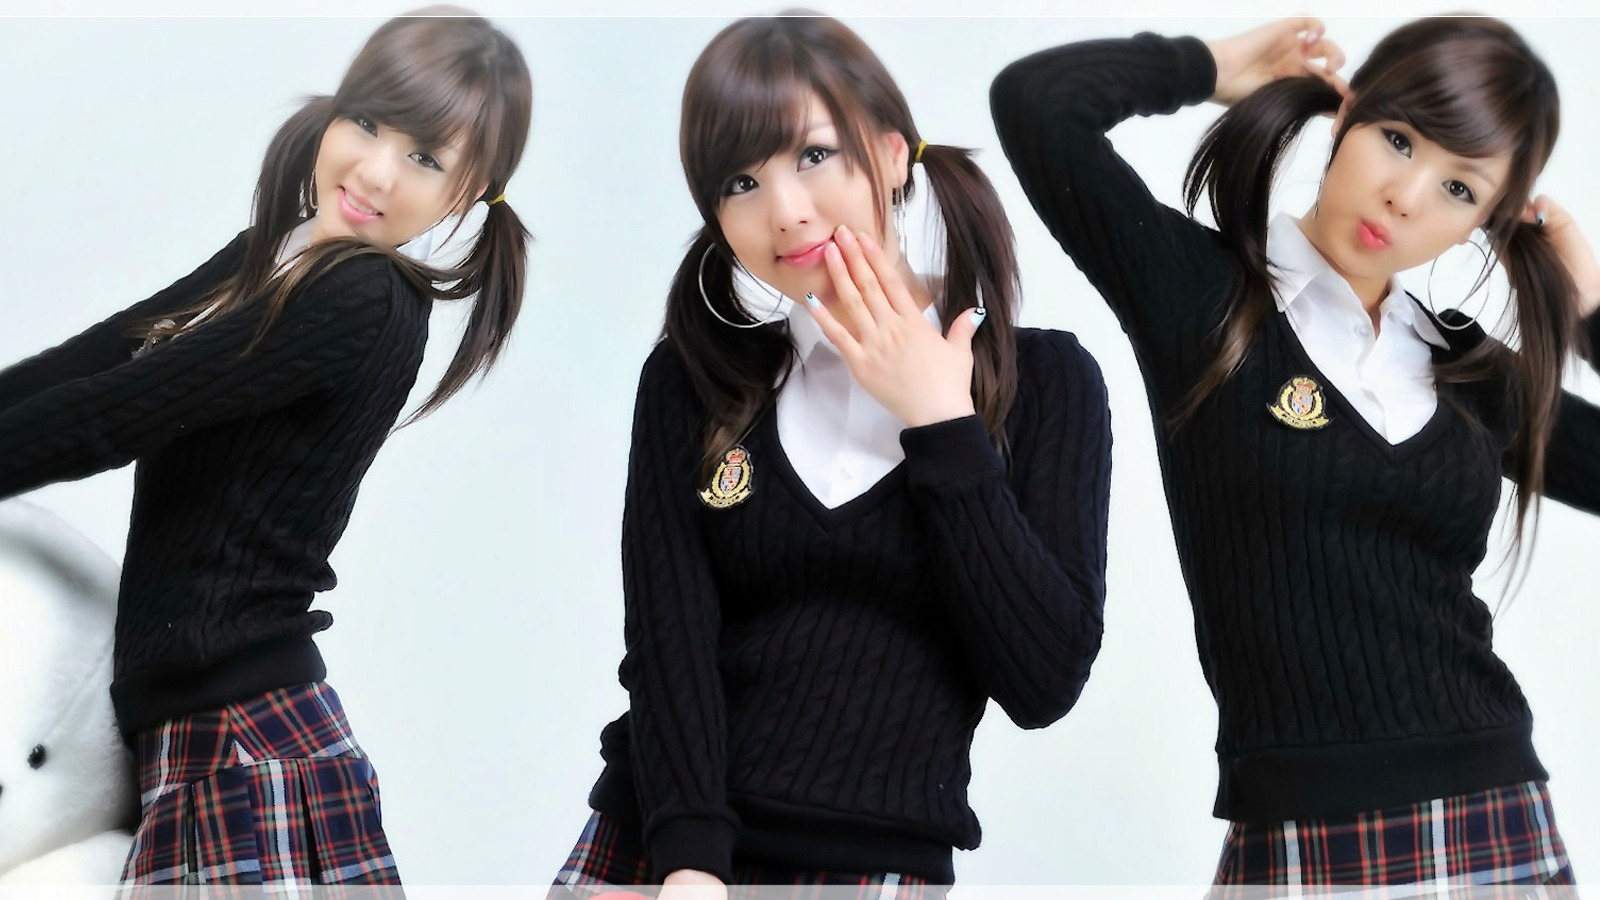 Asian, Schoolgirls, Hwang Mi Hee, Model, Brunette, Korean, School Uniform, Collage Wallpaper